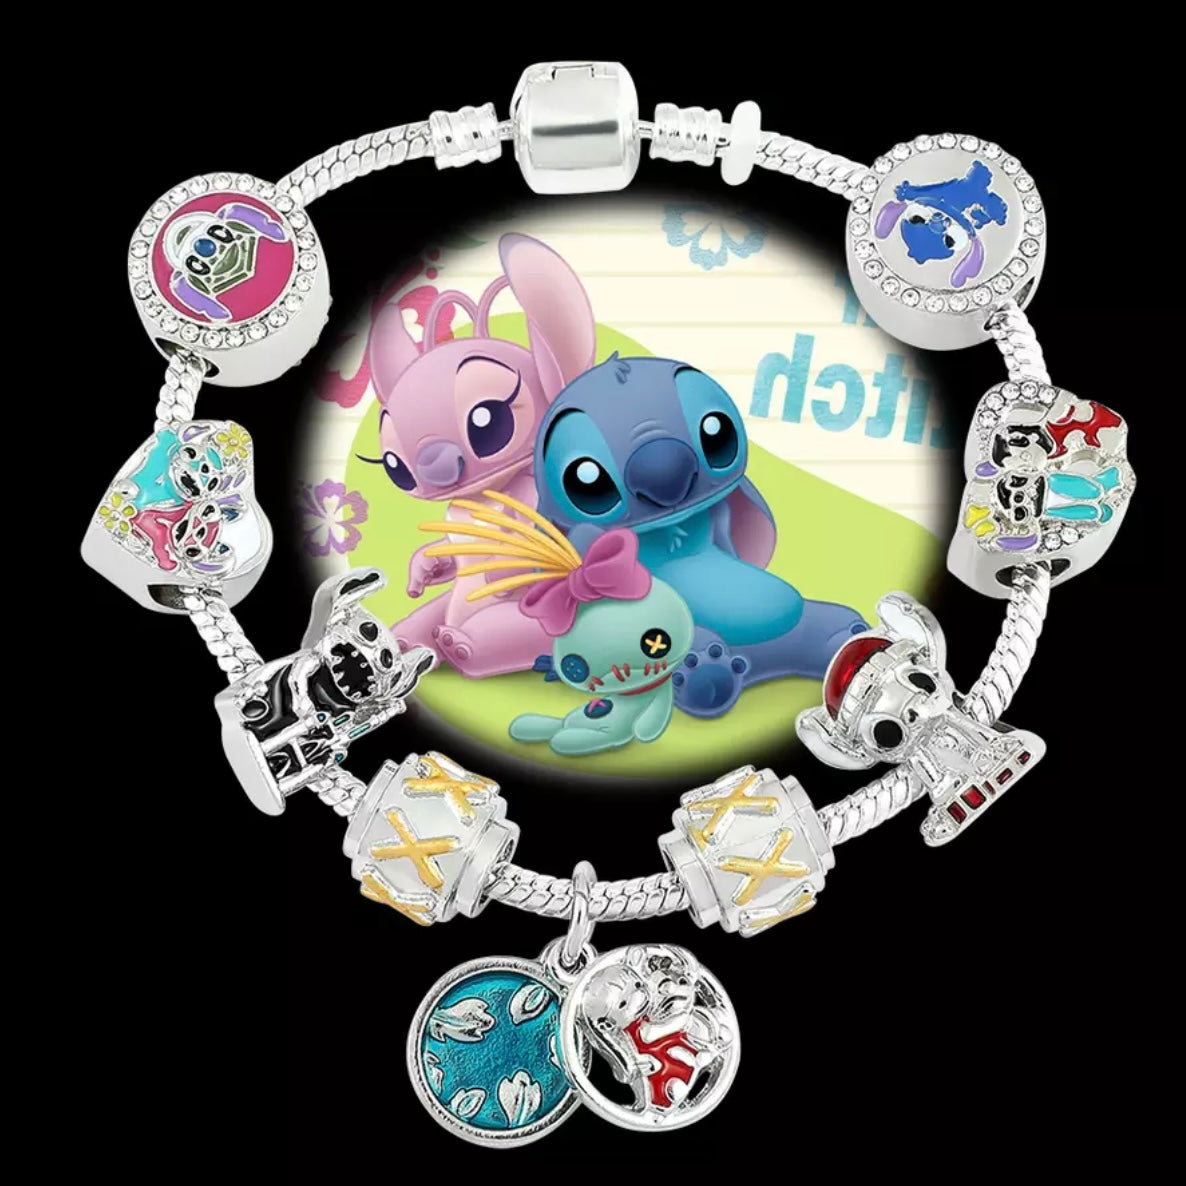 Classic Lilo & Stitch Luxury Charm Bracelet Lilo & Stitch Charm Bracelet for Kids w/ Matching Gift Box and Stickers